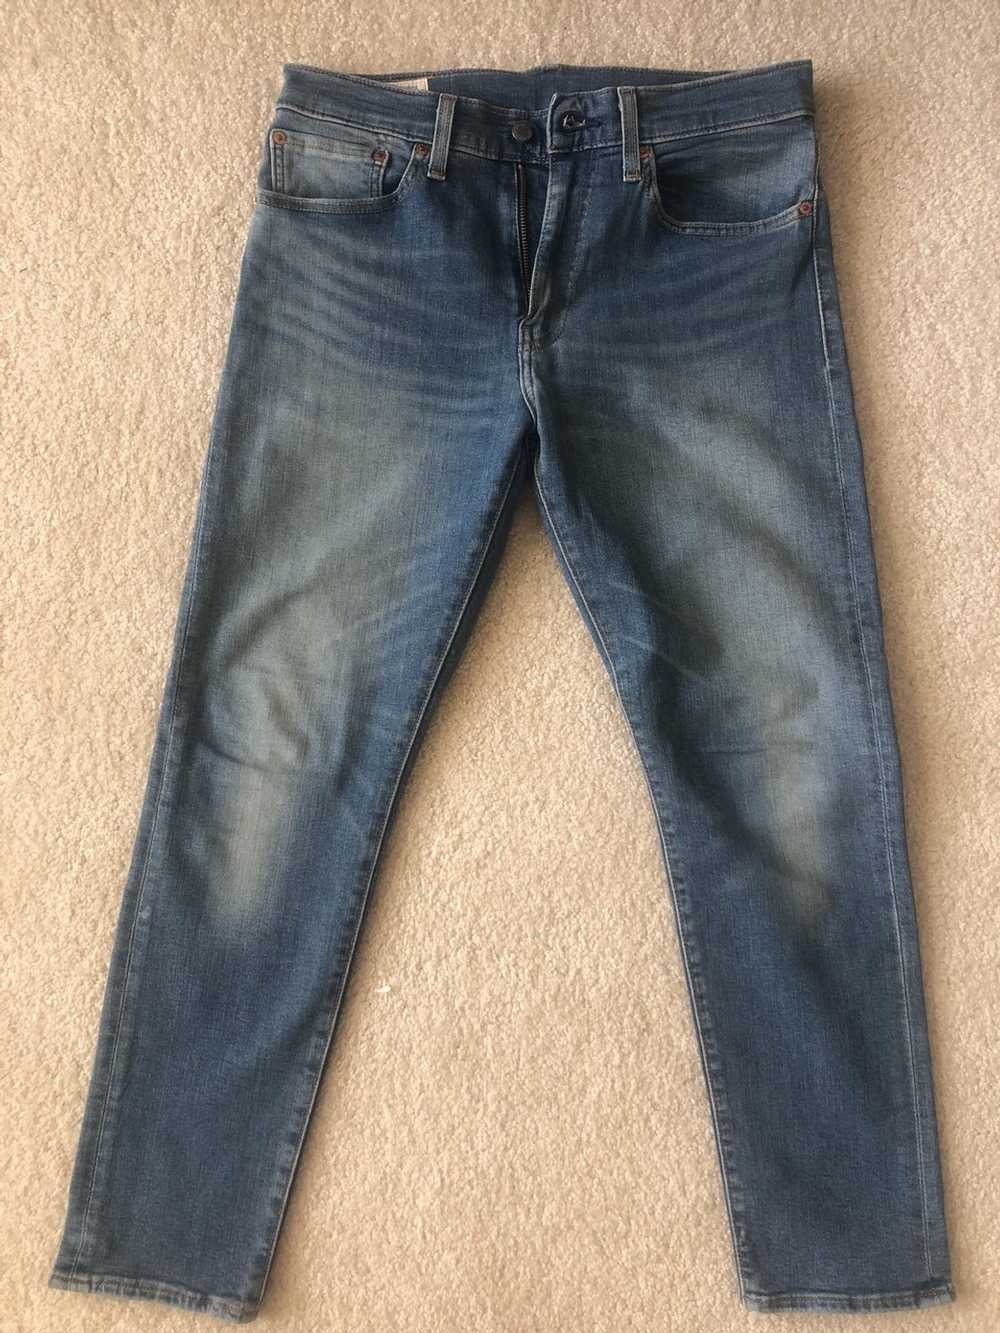 Levi's 512 jeans - image 1